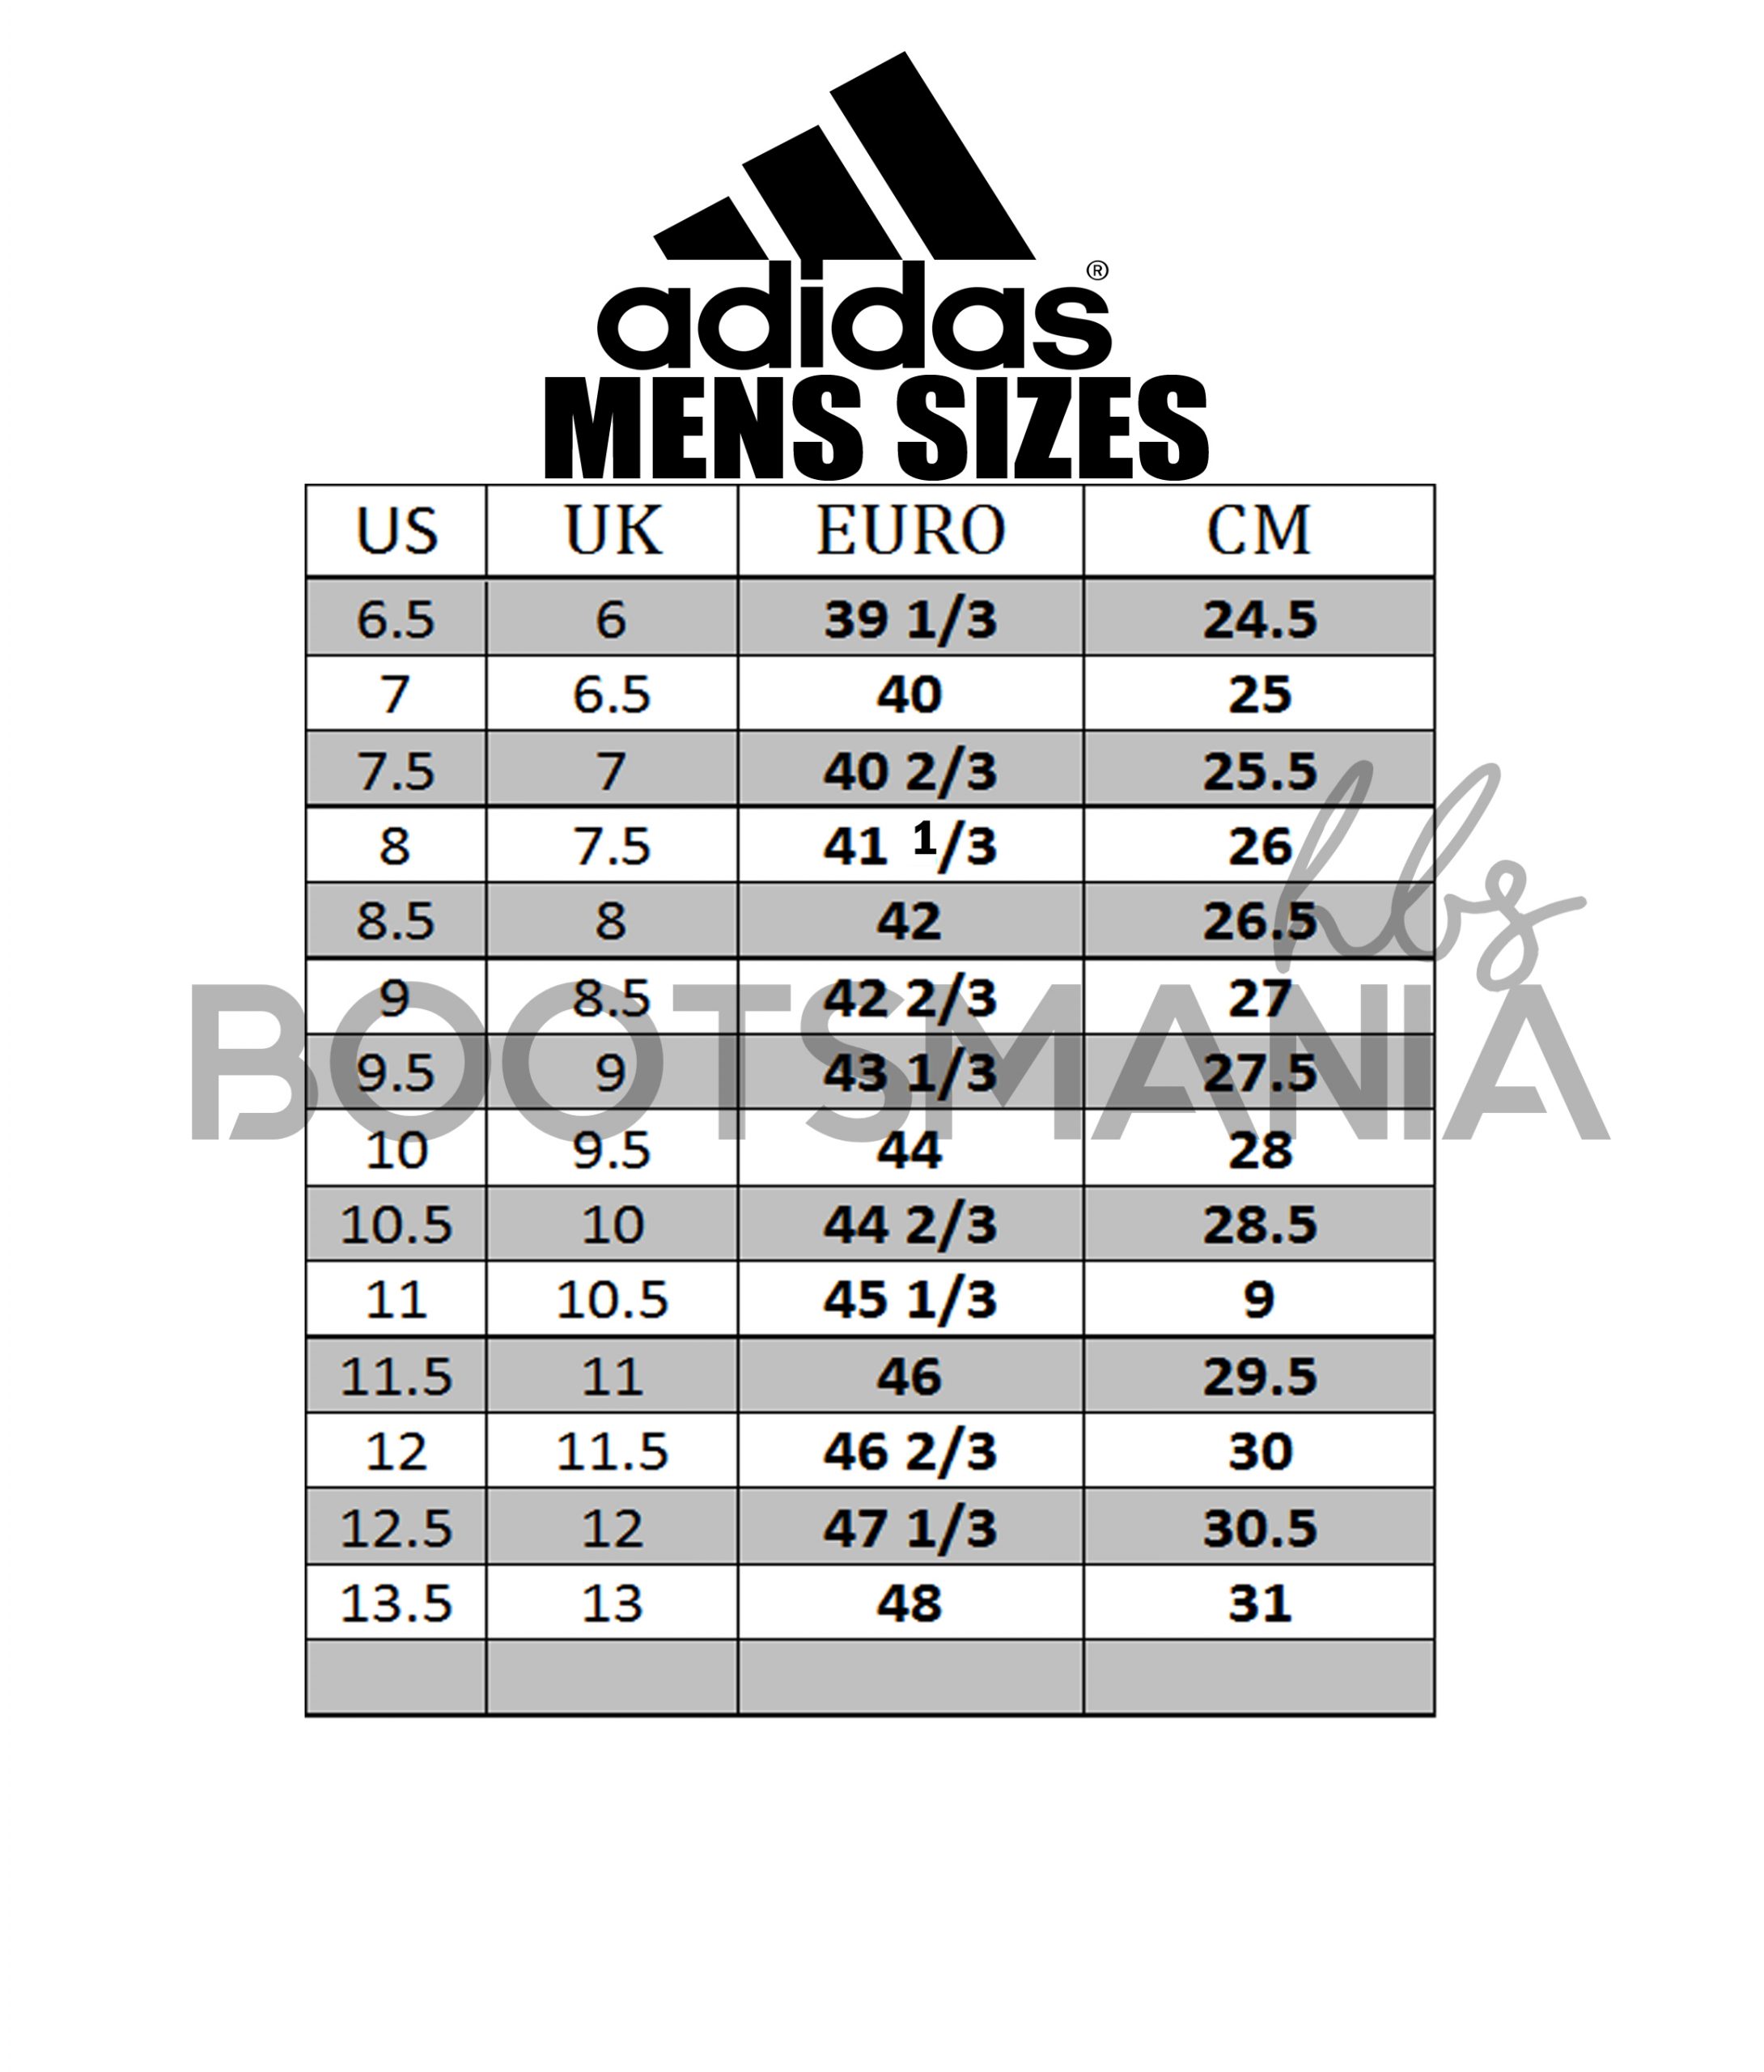 adidas size uk to eu